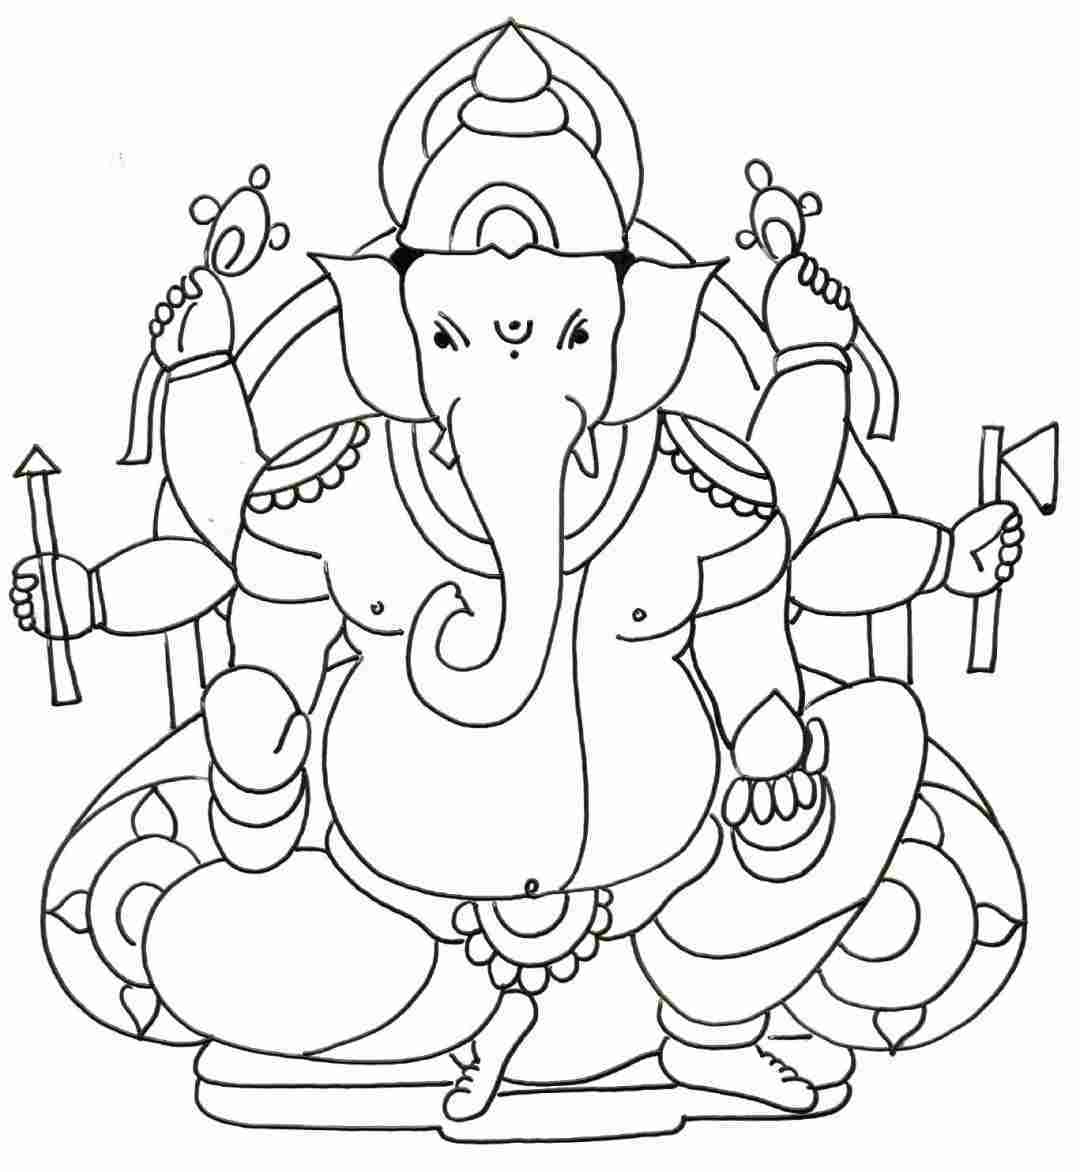 Ganpati Festival Drawing Easy